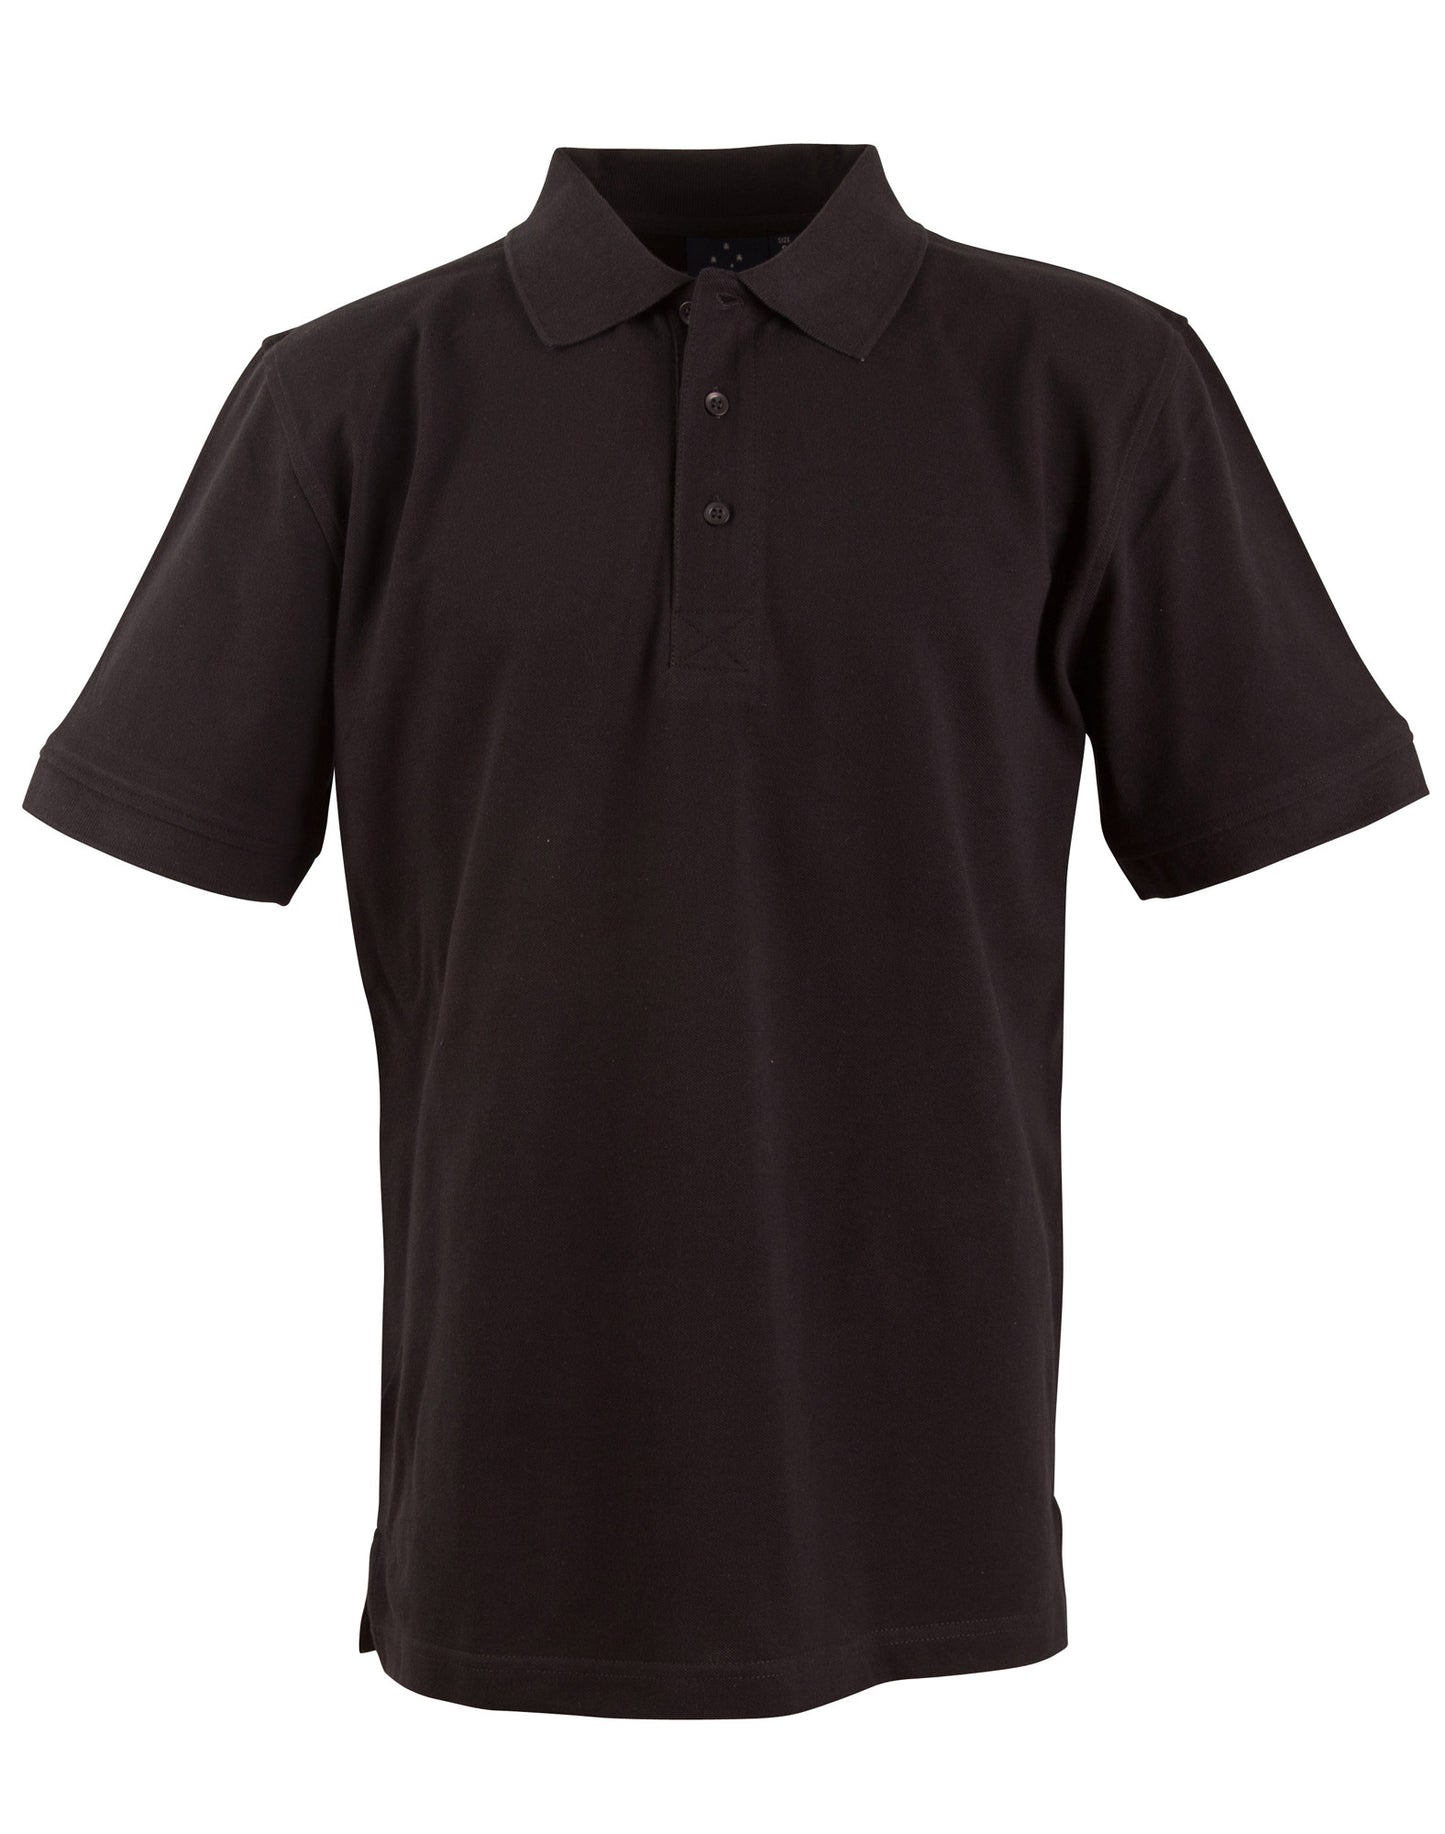 Longbeach Cotton Polo Shirt - made by AIW